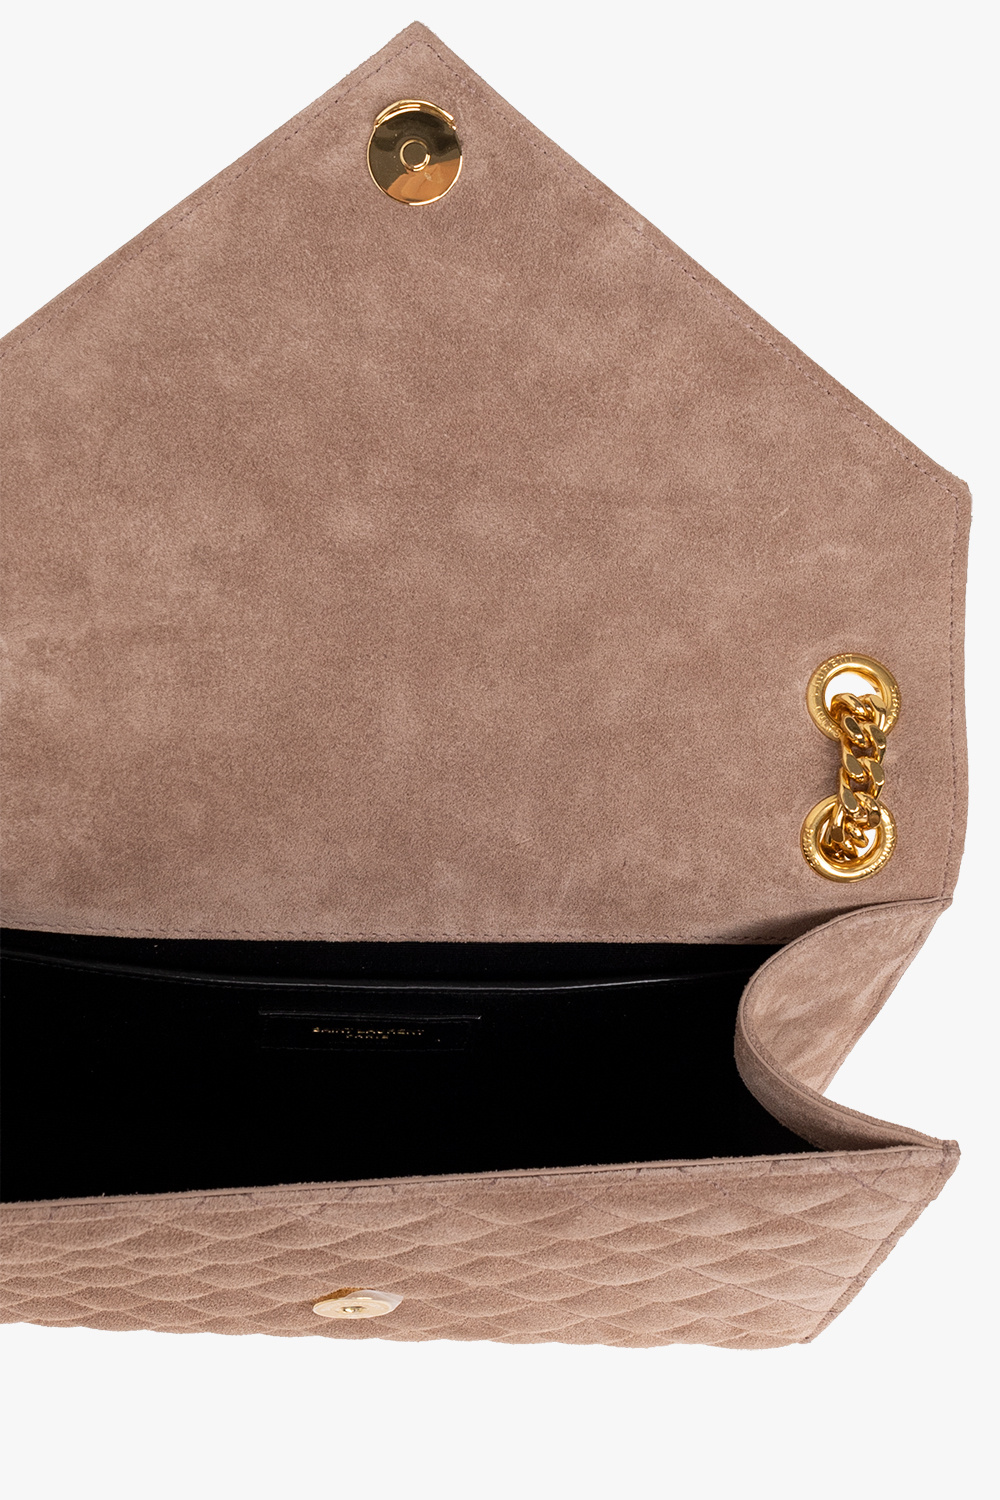 Black 'Envelope' shoulder bag Saint Laurent - Vitkac HK